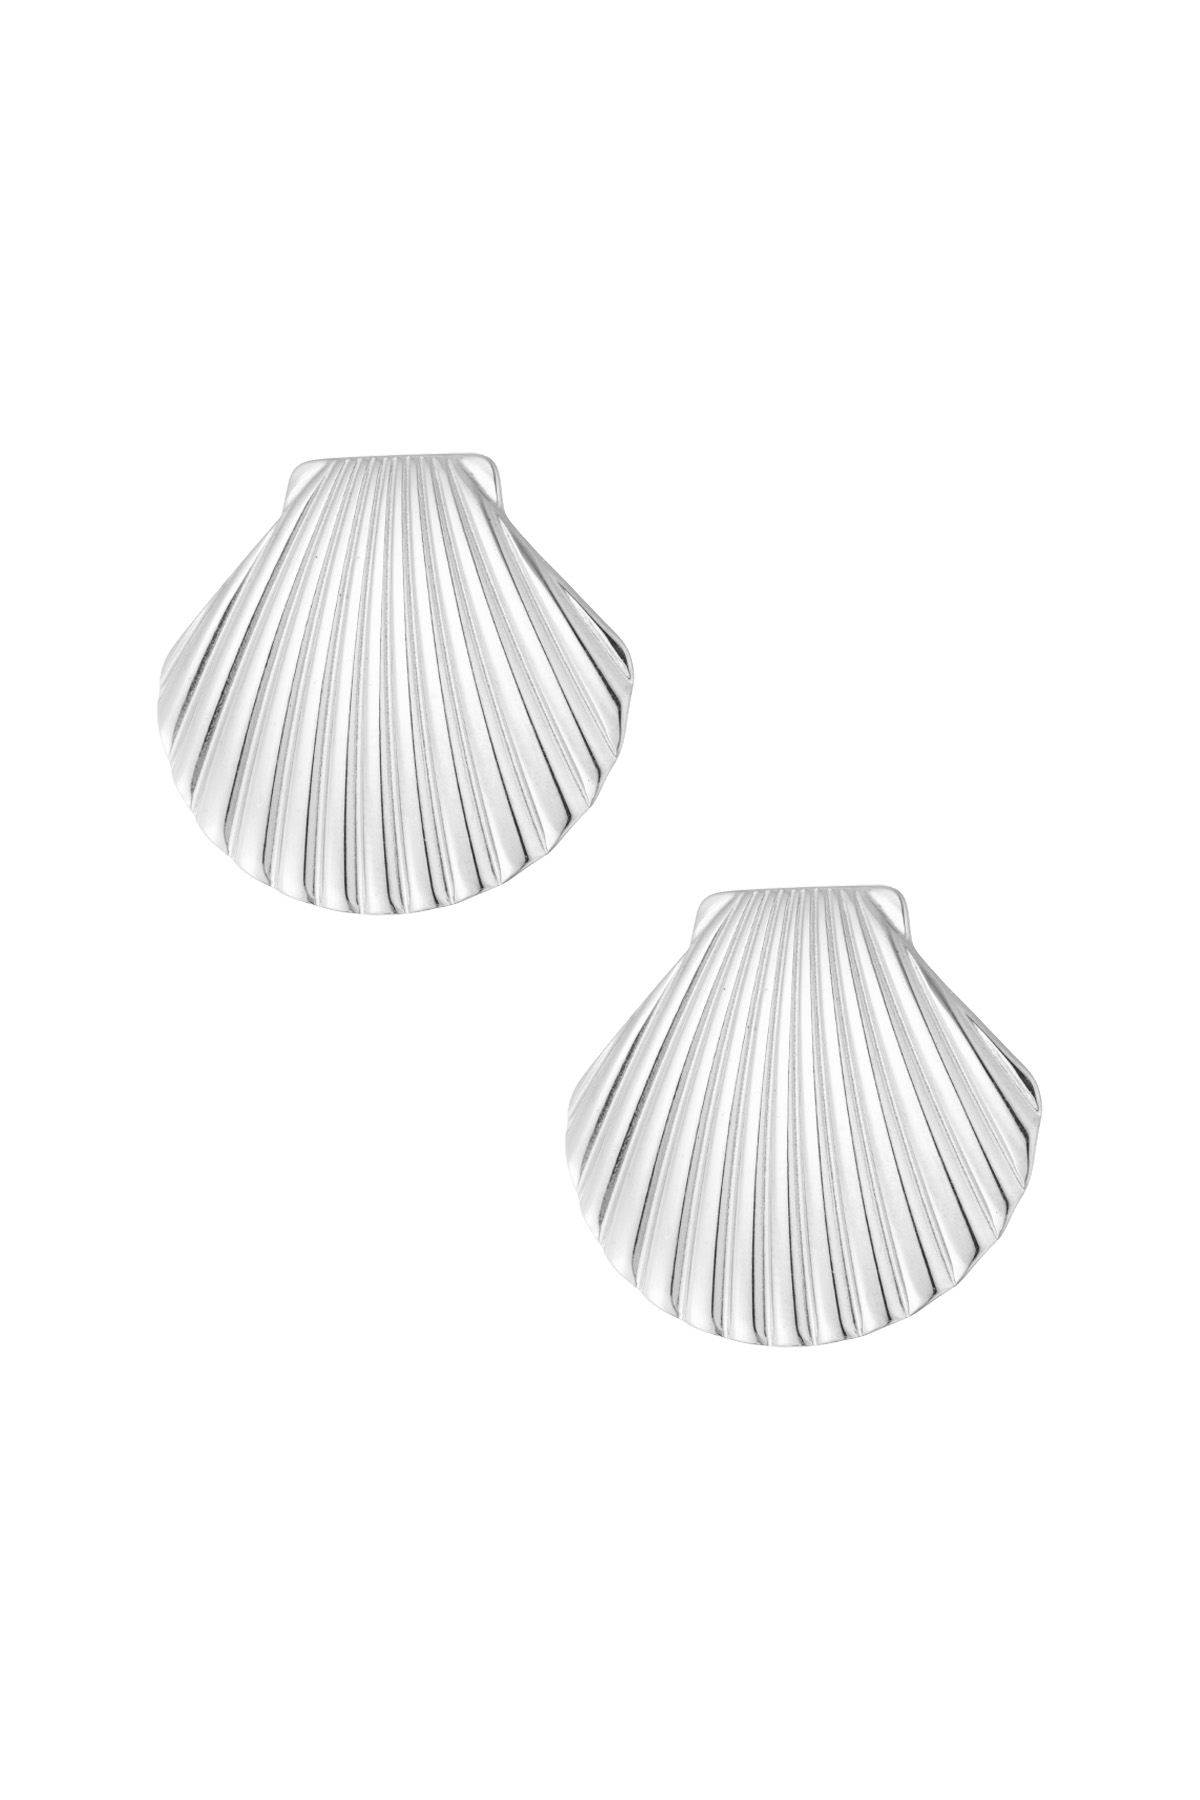 Shell statement earrings - silver 